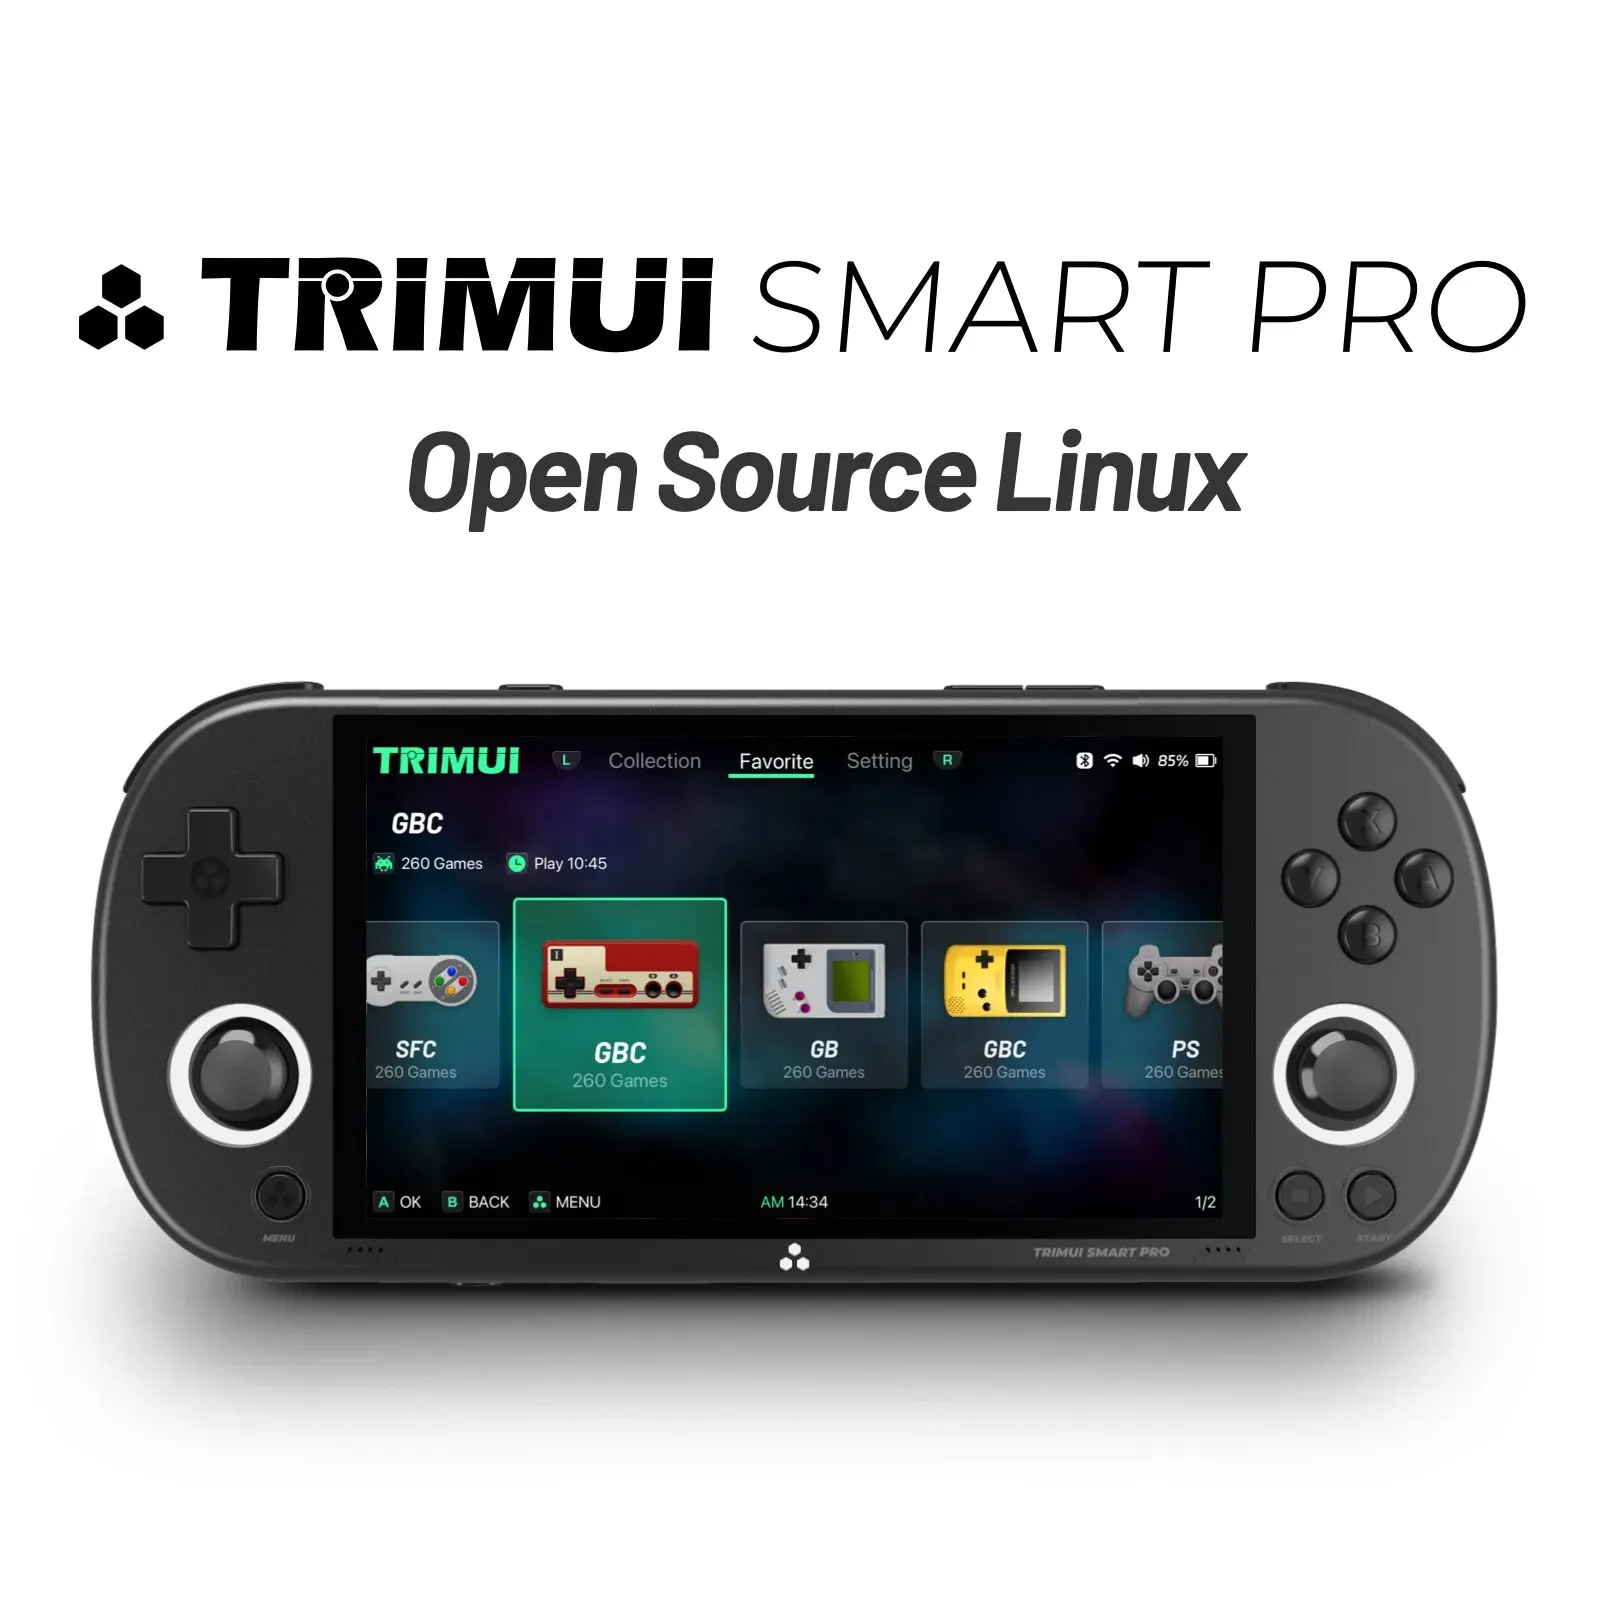 Trimui 스마트 프로 휴대용 게임 콘솔, 4.96 인치 IPS 스크린, 리눅스 시스템 조이스틱, RGB 조명, Smartpro 레트로 비디오 게임 플레이어 선물